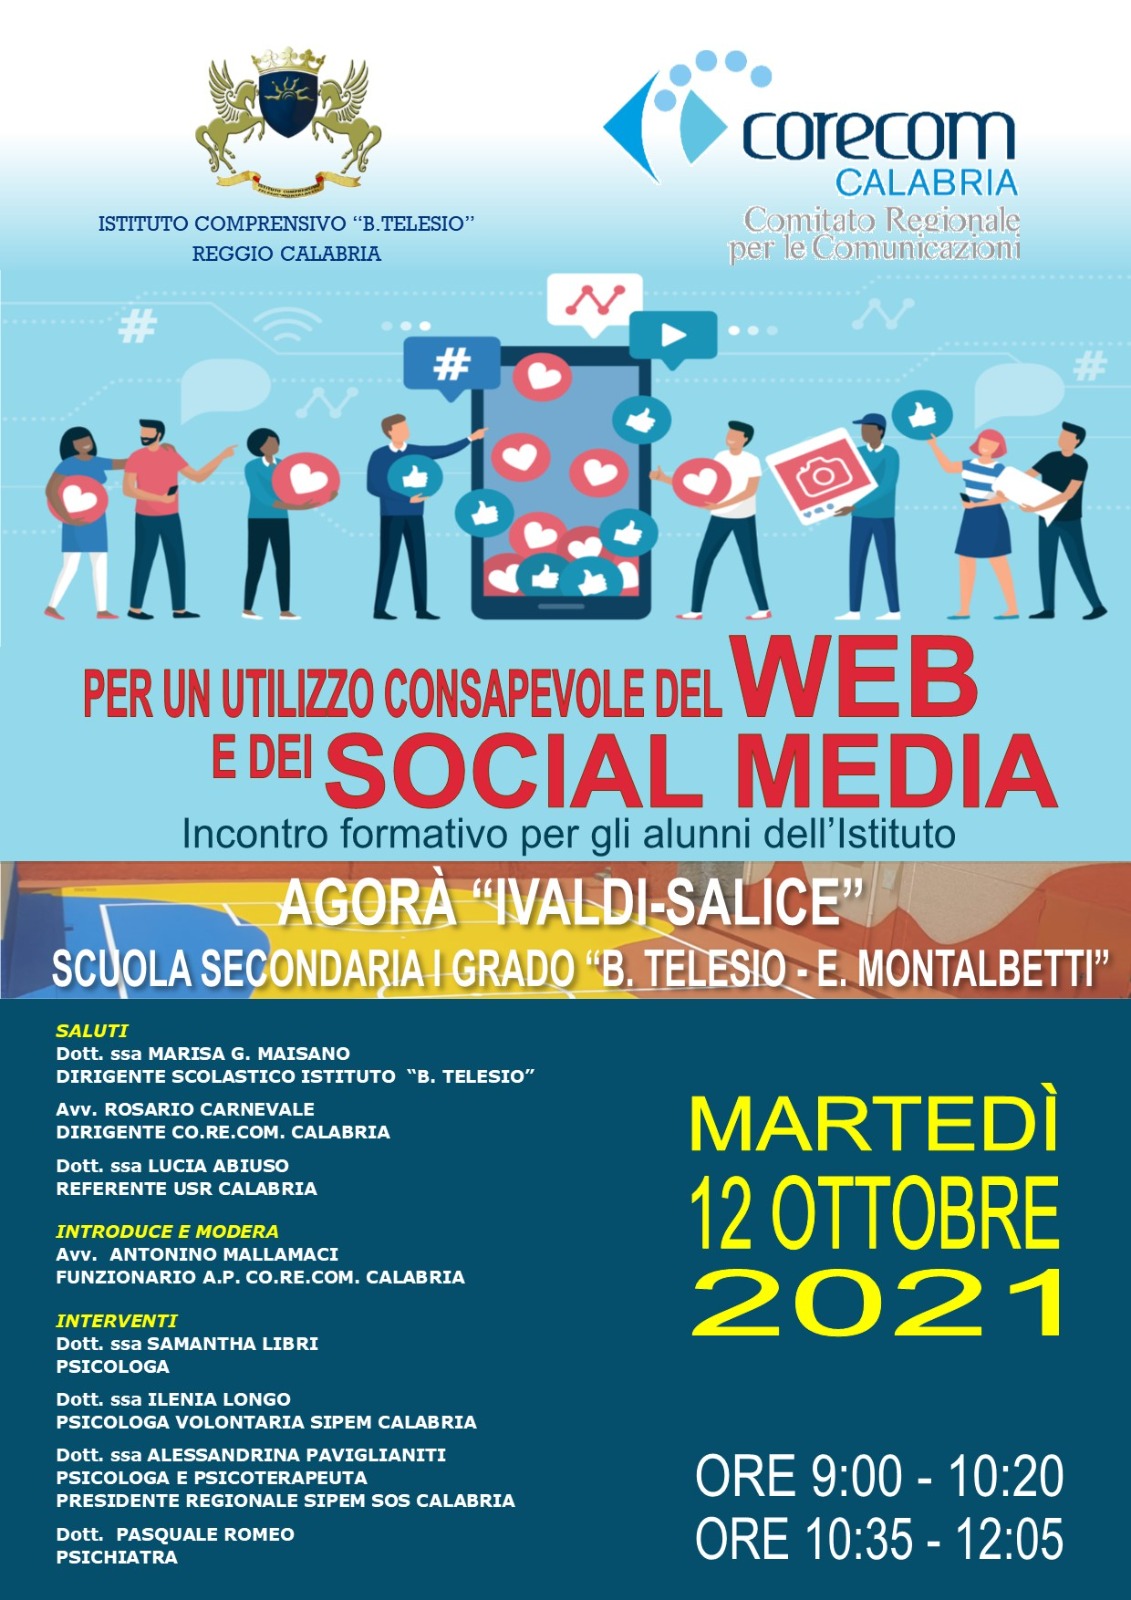 Locandina Incontro formativo per un utilizzo consapevole del web e dei social media 12 ottobre 2021